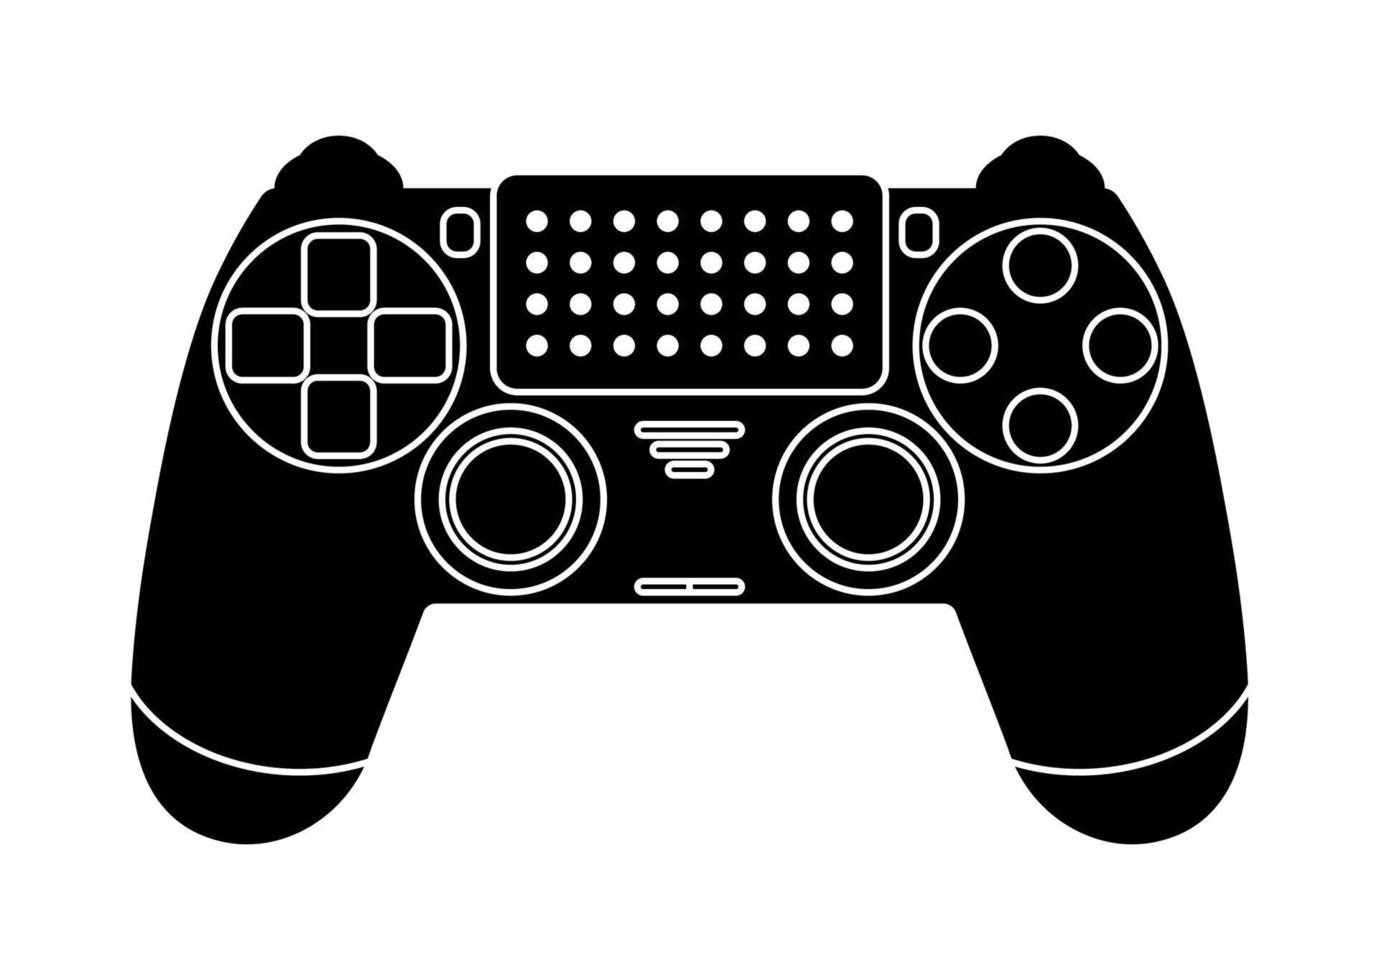 ícono blanco y negro de un joystick inalámbrico, controlador de control para una consola de juegos. vector aislado sobre fondo blanco